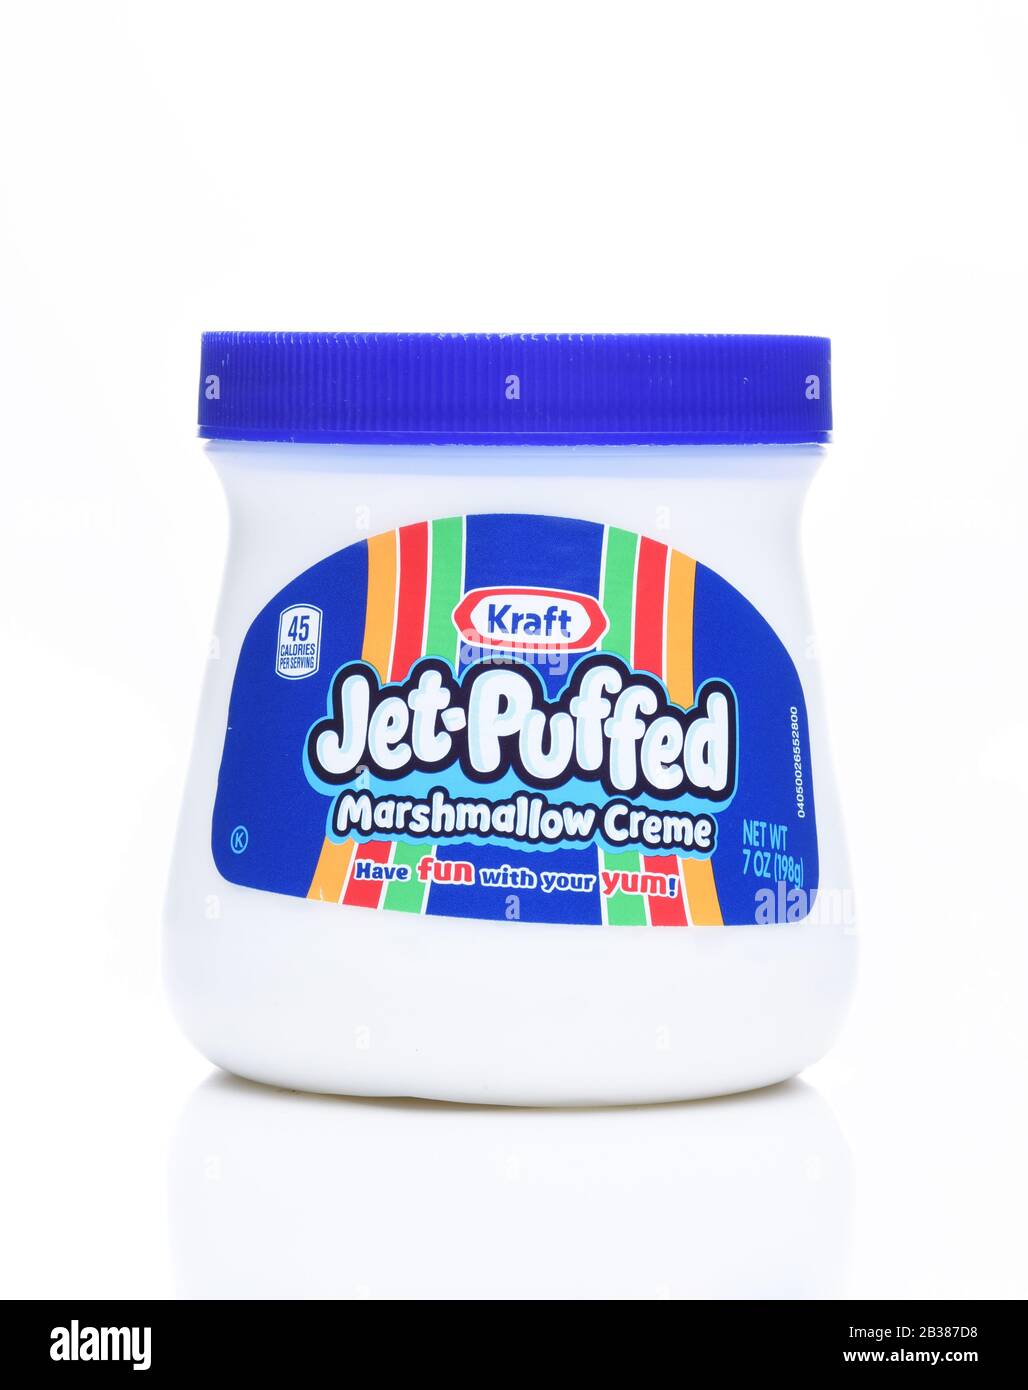 Irvine, KALIFORNIEN - DEC 4, 2018: Kraft Jet Puffte Marshmallow Creme. Eine Süßwarenspreizung, die dem Geschmack eines festen Marshmallows ähnelt. Stockfoto